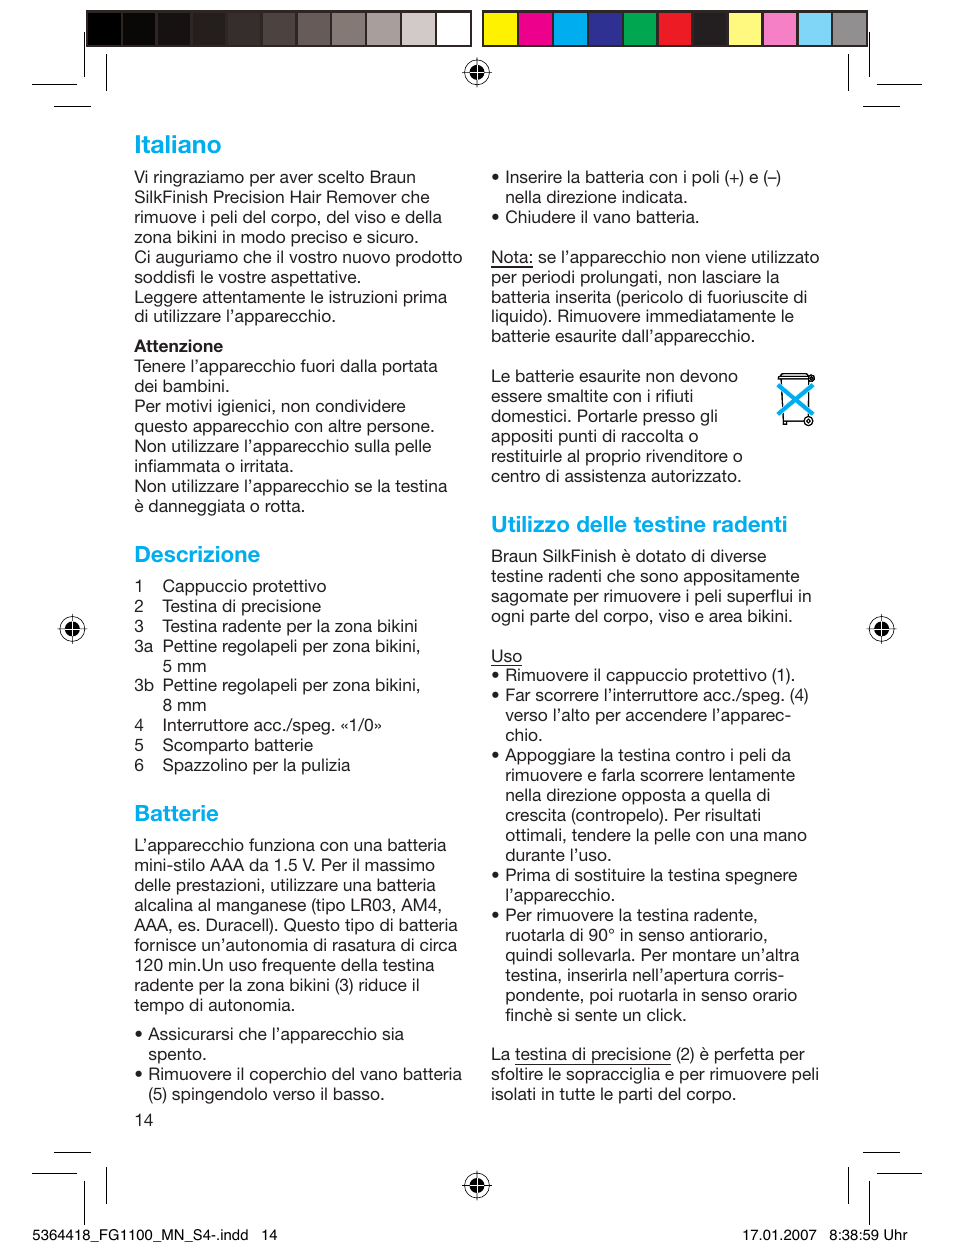 Italiano, Descrizione, Batterie | Utilizzo delle testine radenti | Braun FG1100 Silk Epil User Manual | Page 14 / 70